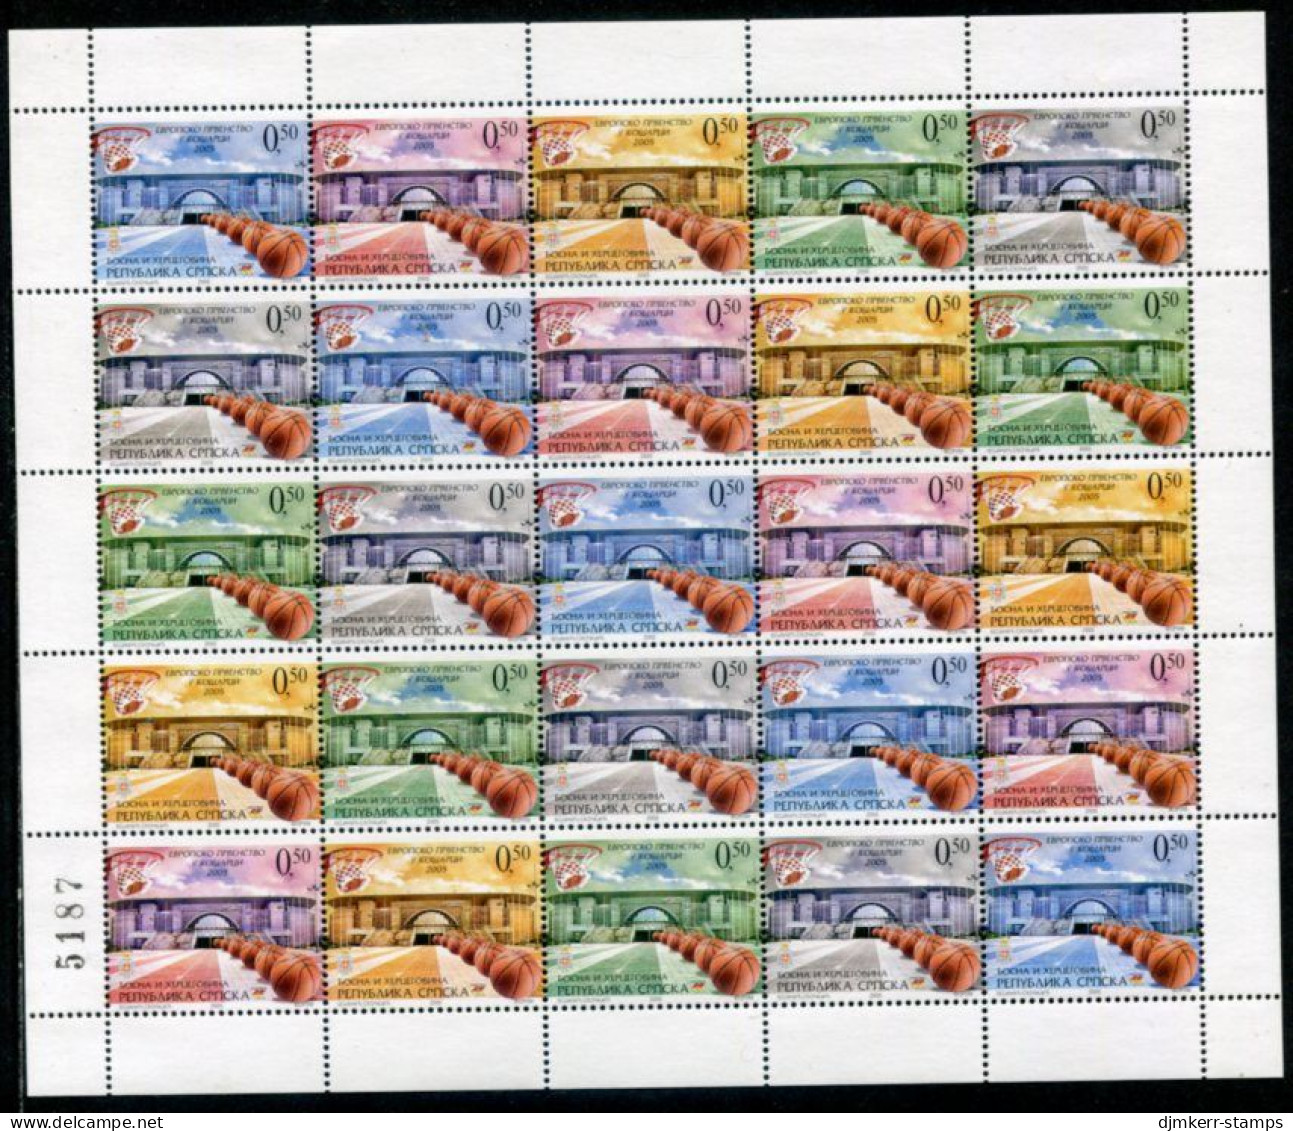 BOSNIAN SERB REPUBLIC 2005 Basketball Sheet With Artist's Initials NS On Stamp 18 MNH / **.  Michel 343-47 - Bosnien-Herzegowina